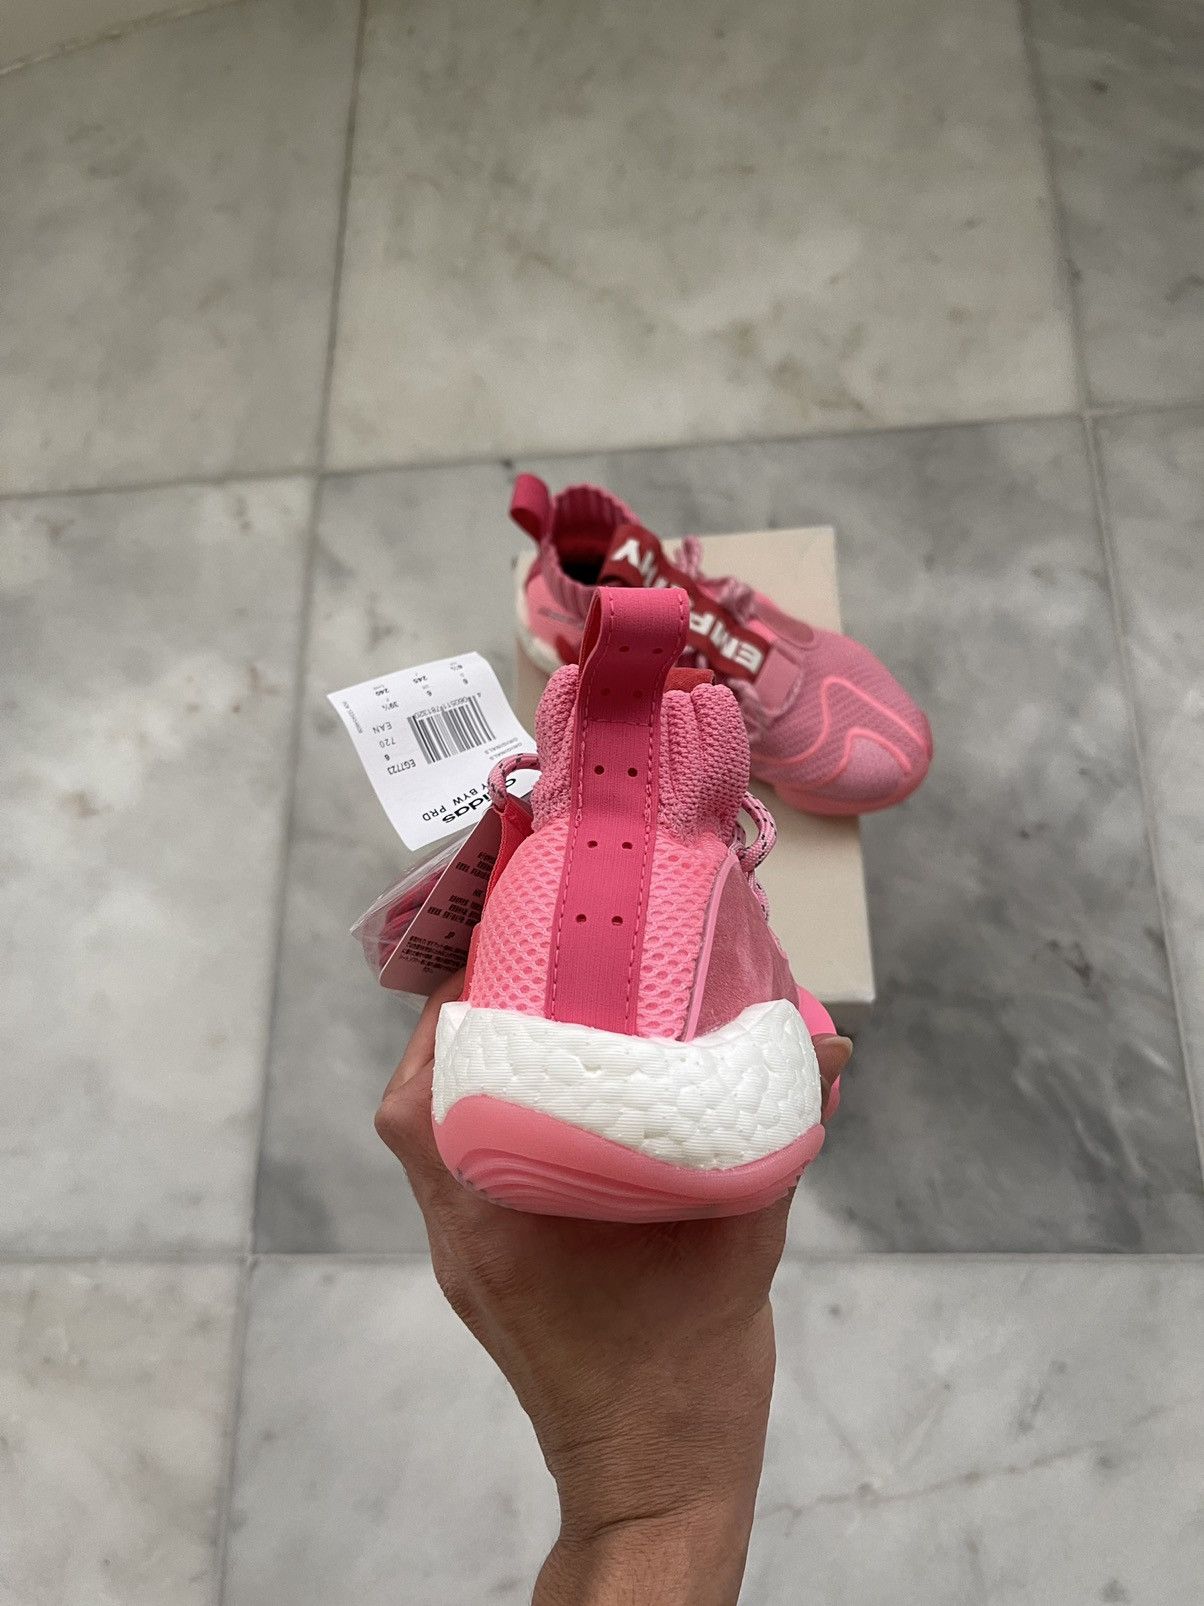 Adidas Pharrell x Crazy BYW X Hyper Pink 2019 Size US 6.5 / EU 39-40 - 8 Thumbnail